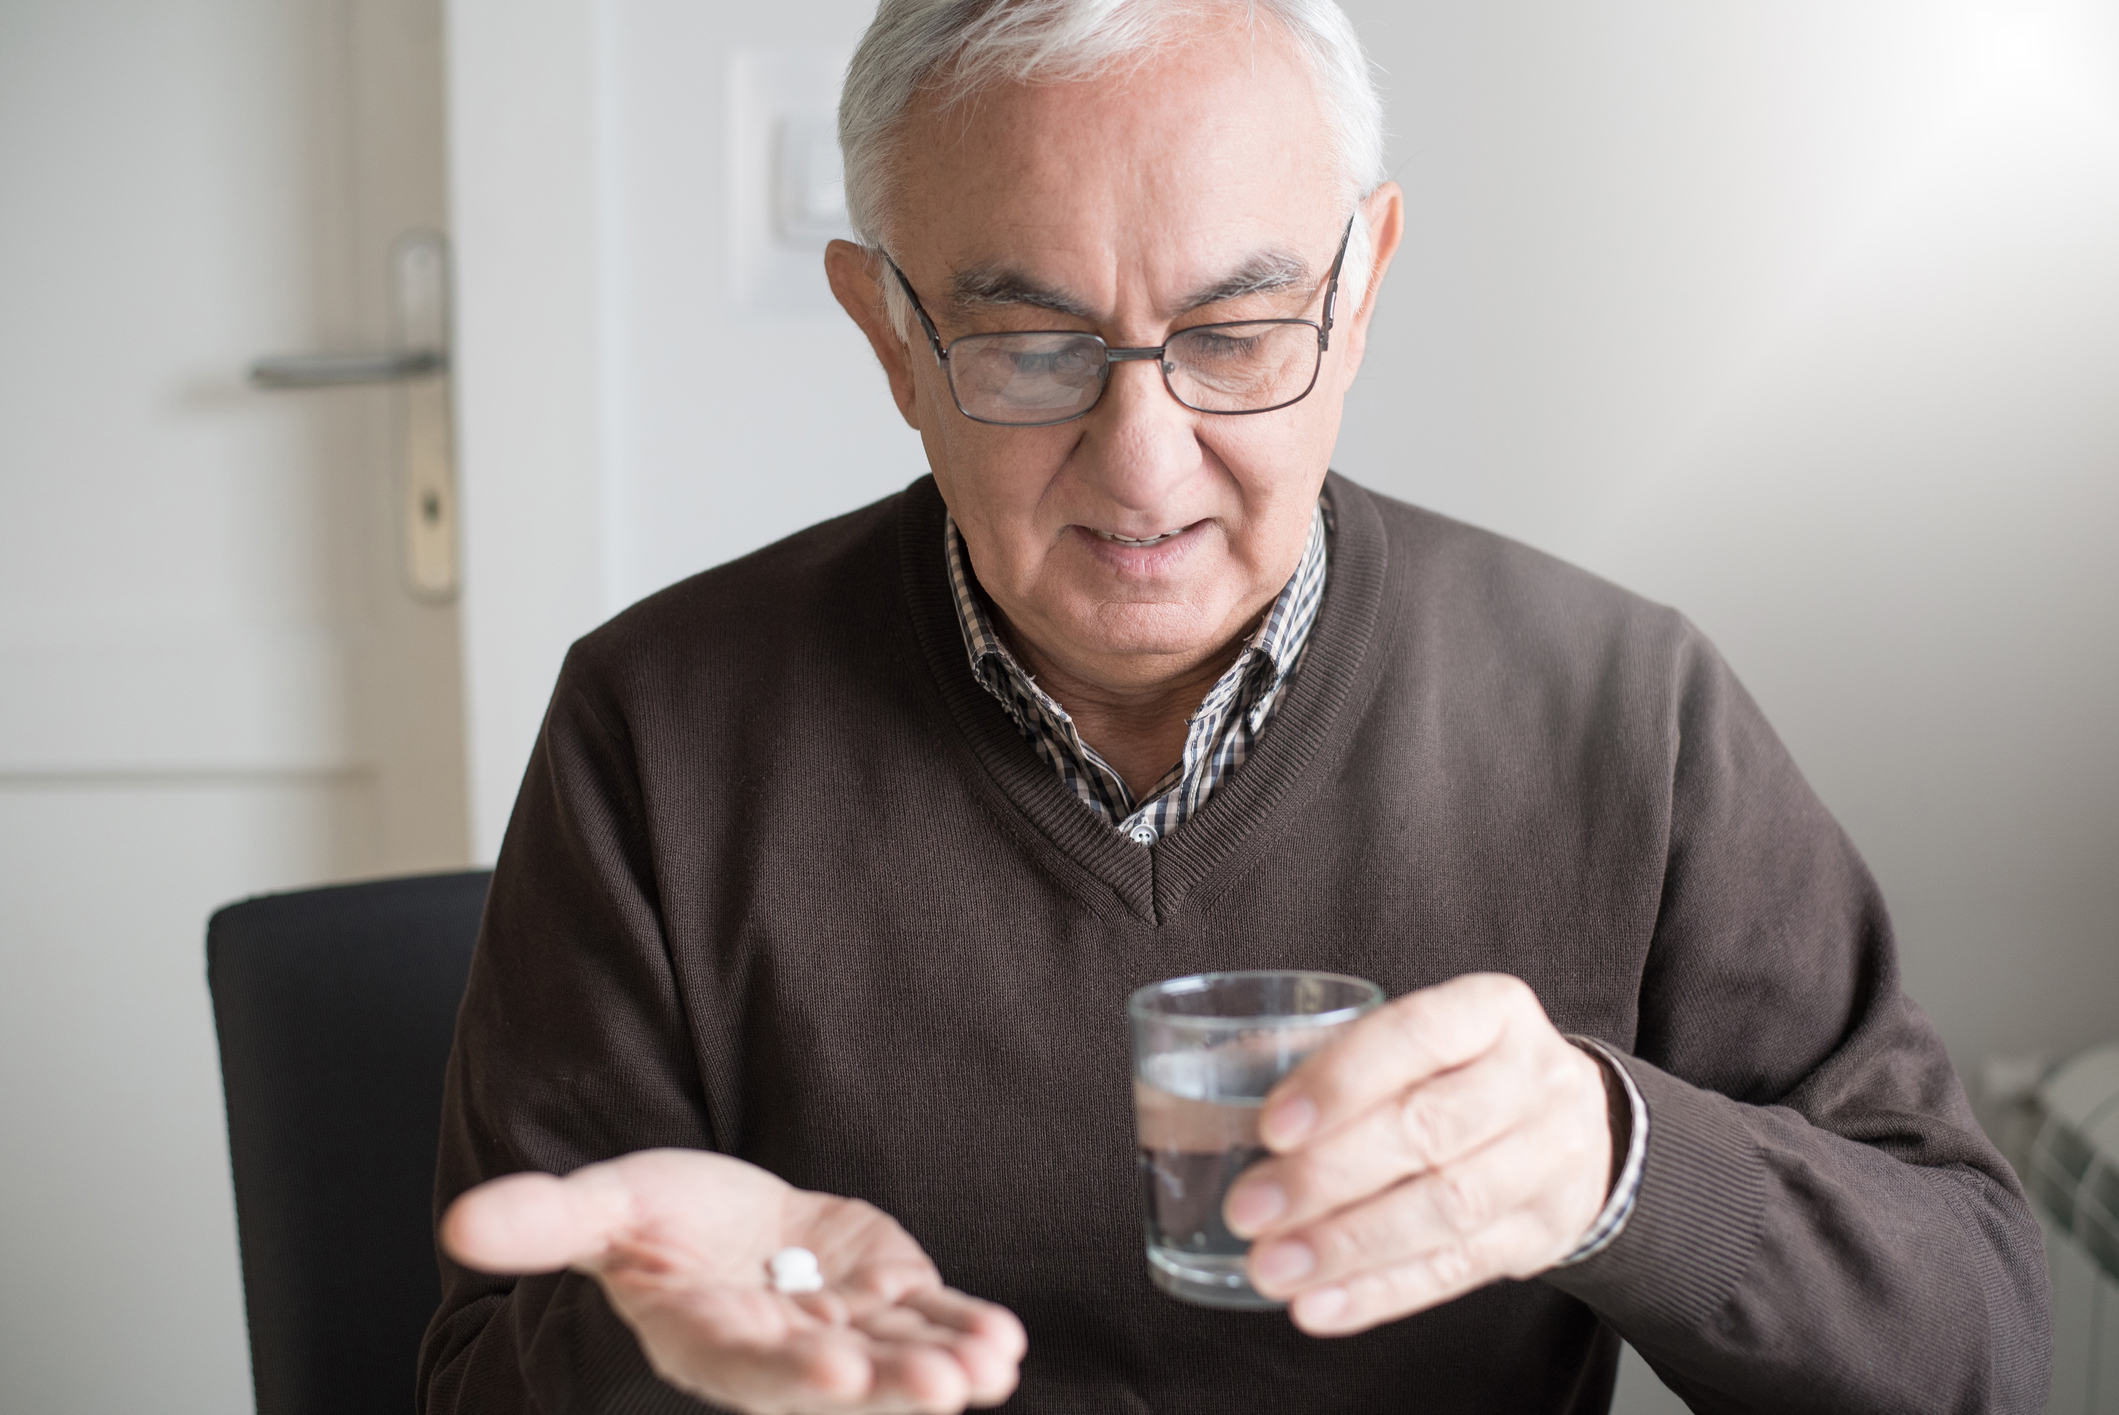 Man holding pill bottle